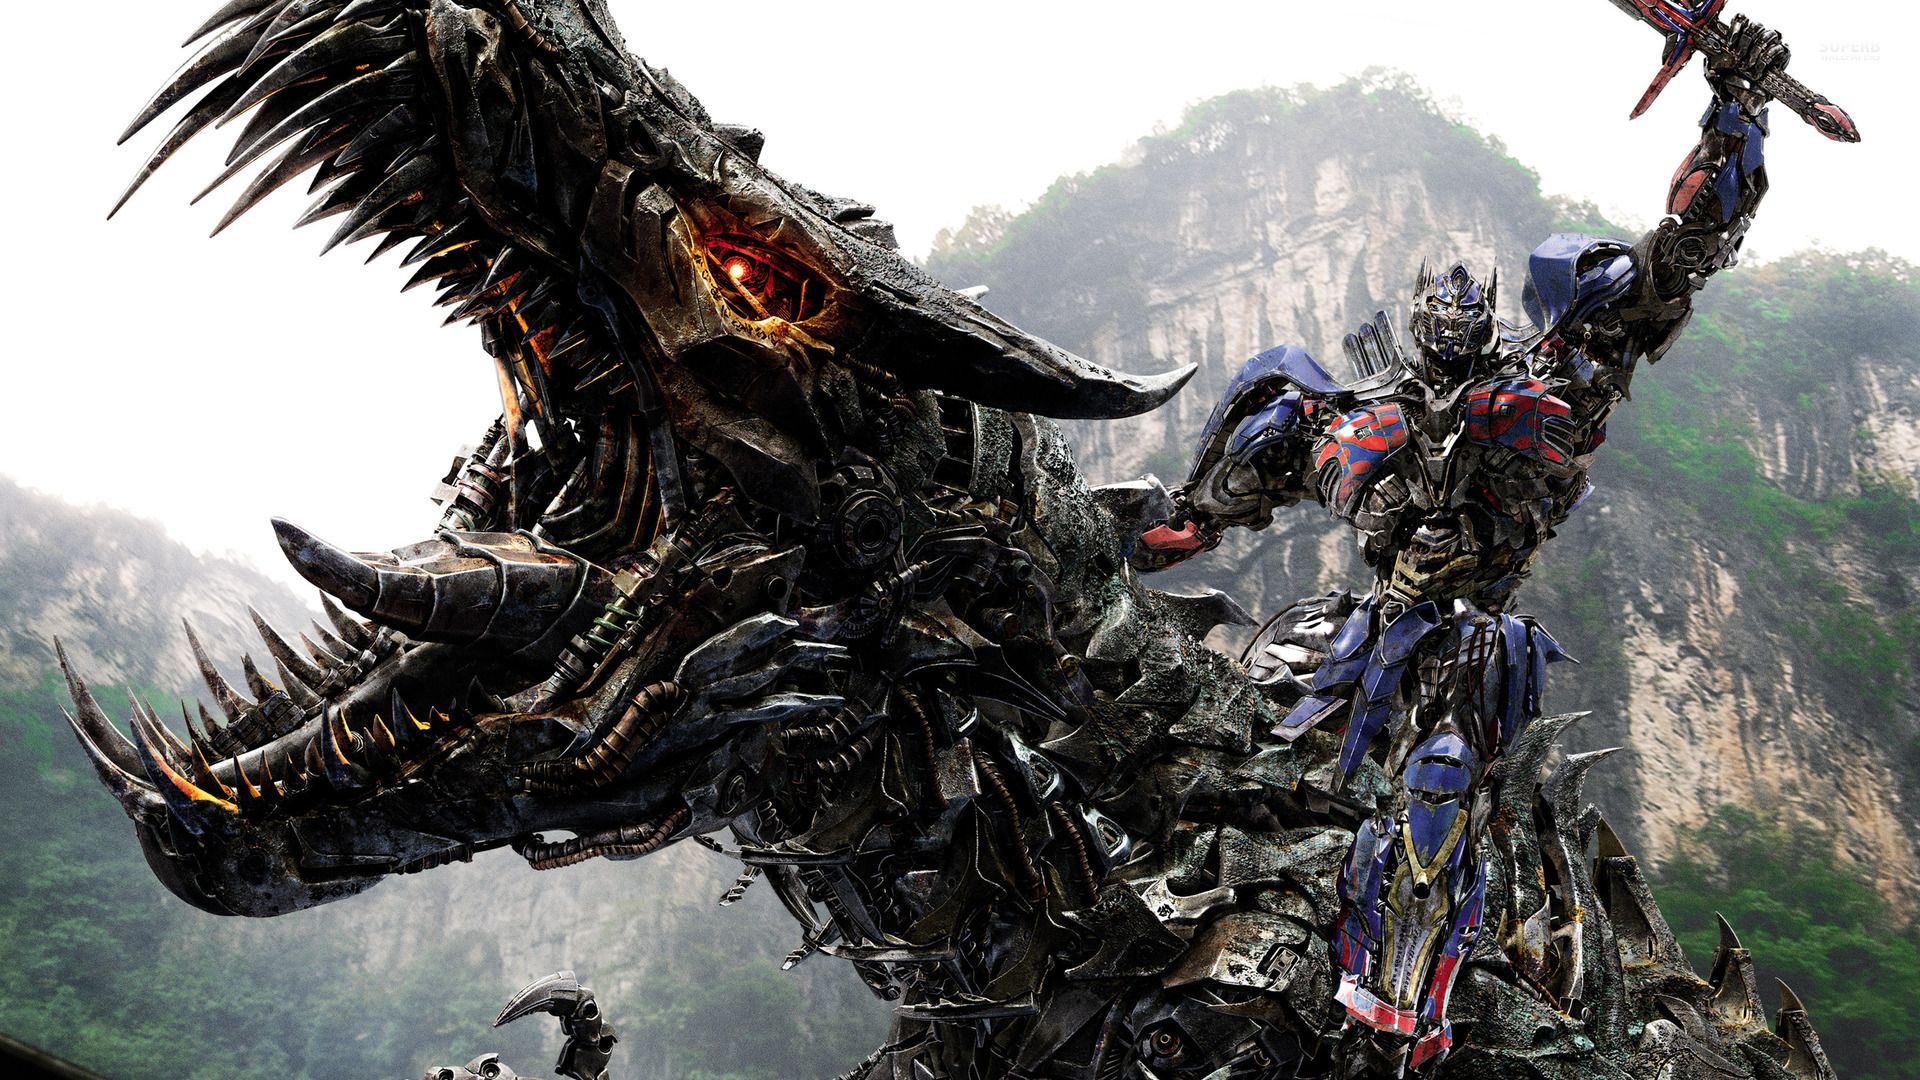 Transformers plánujú vytvoriť rozšírený svet plný sequelov a spin-offov po vzore Marvelu